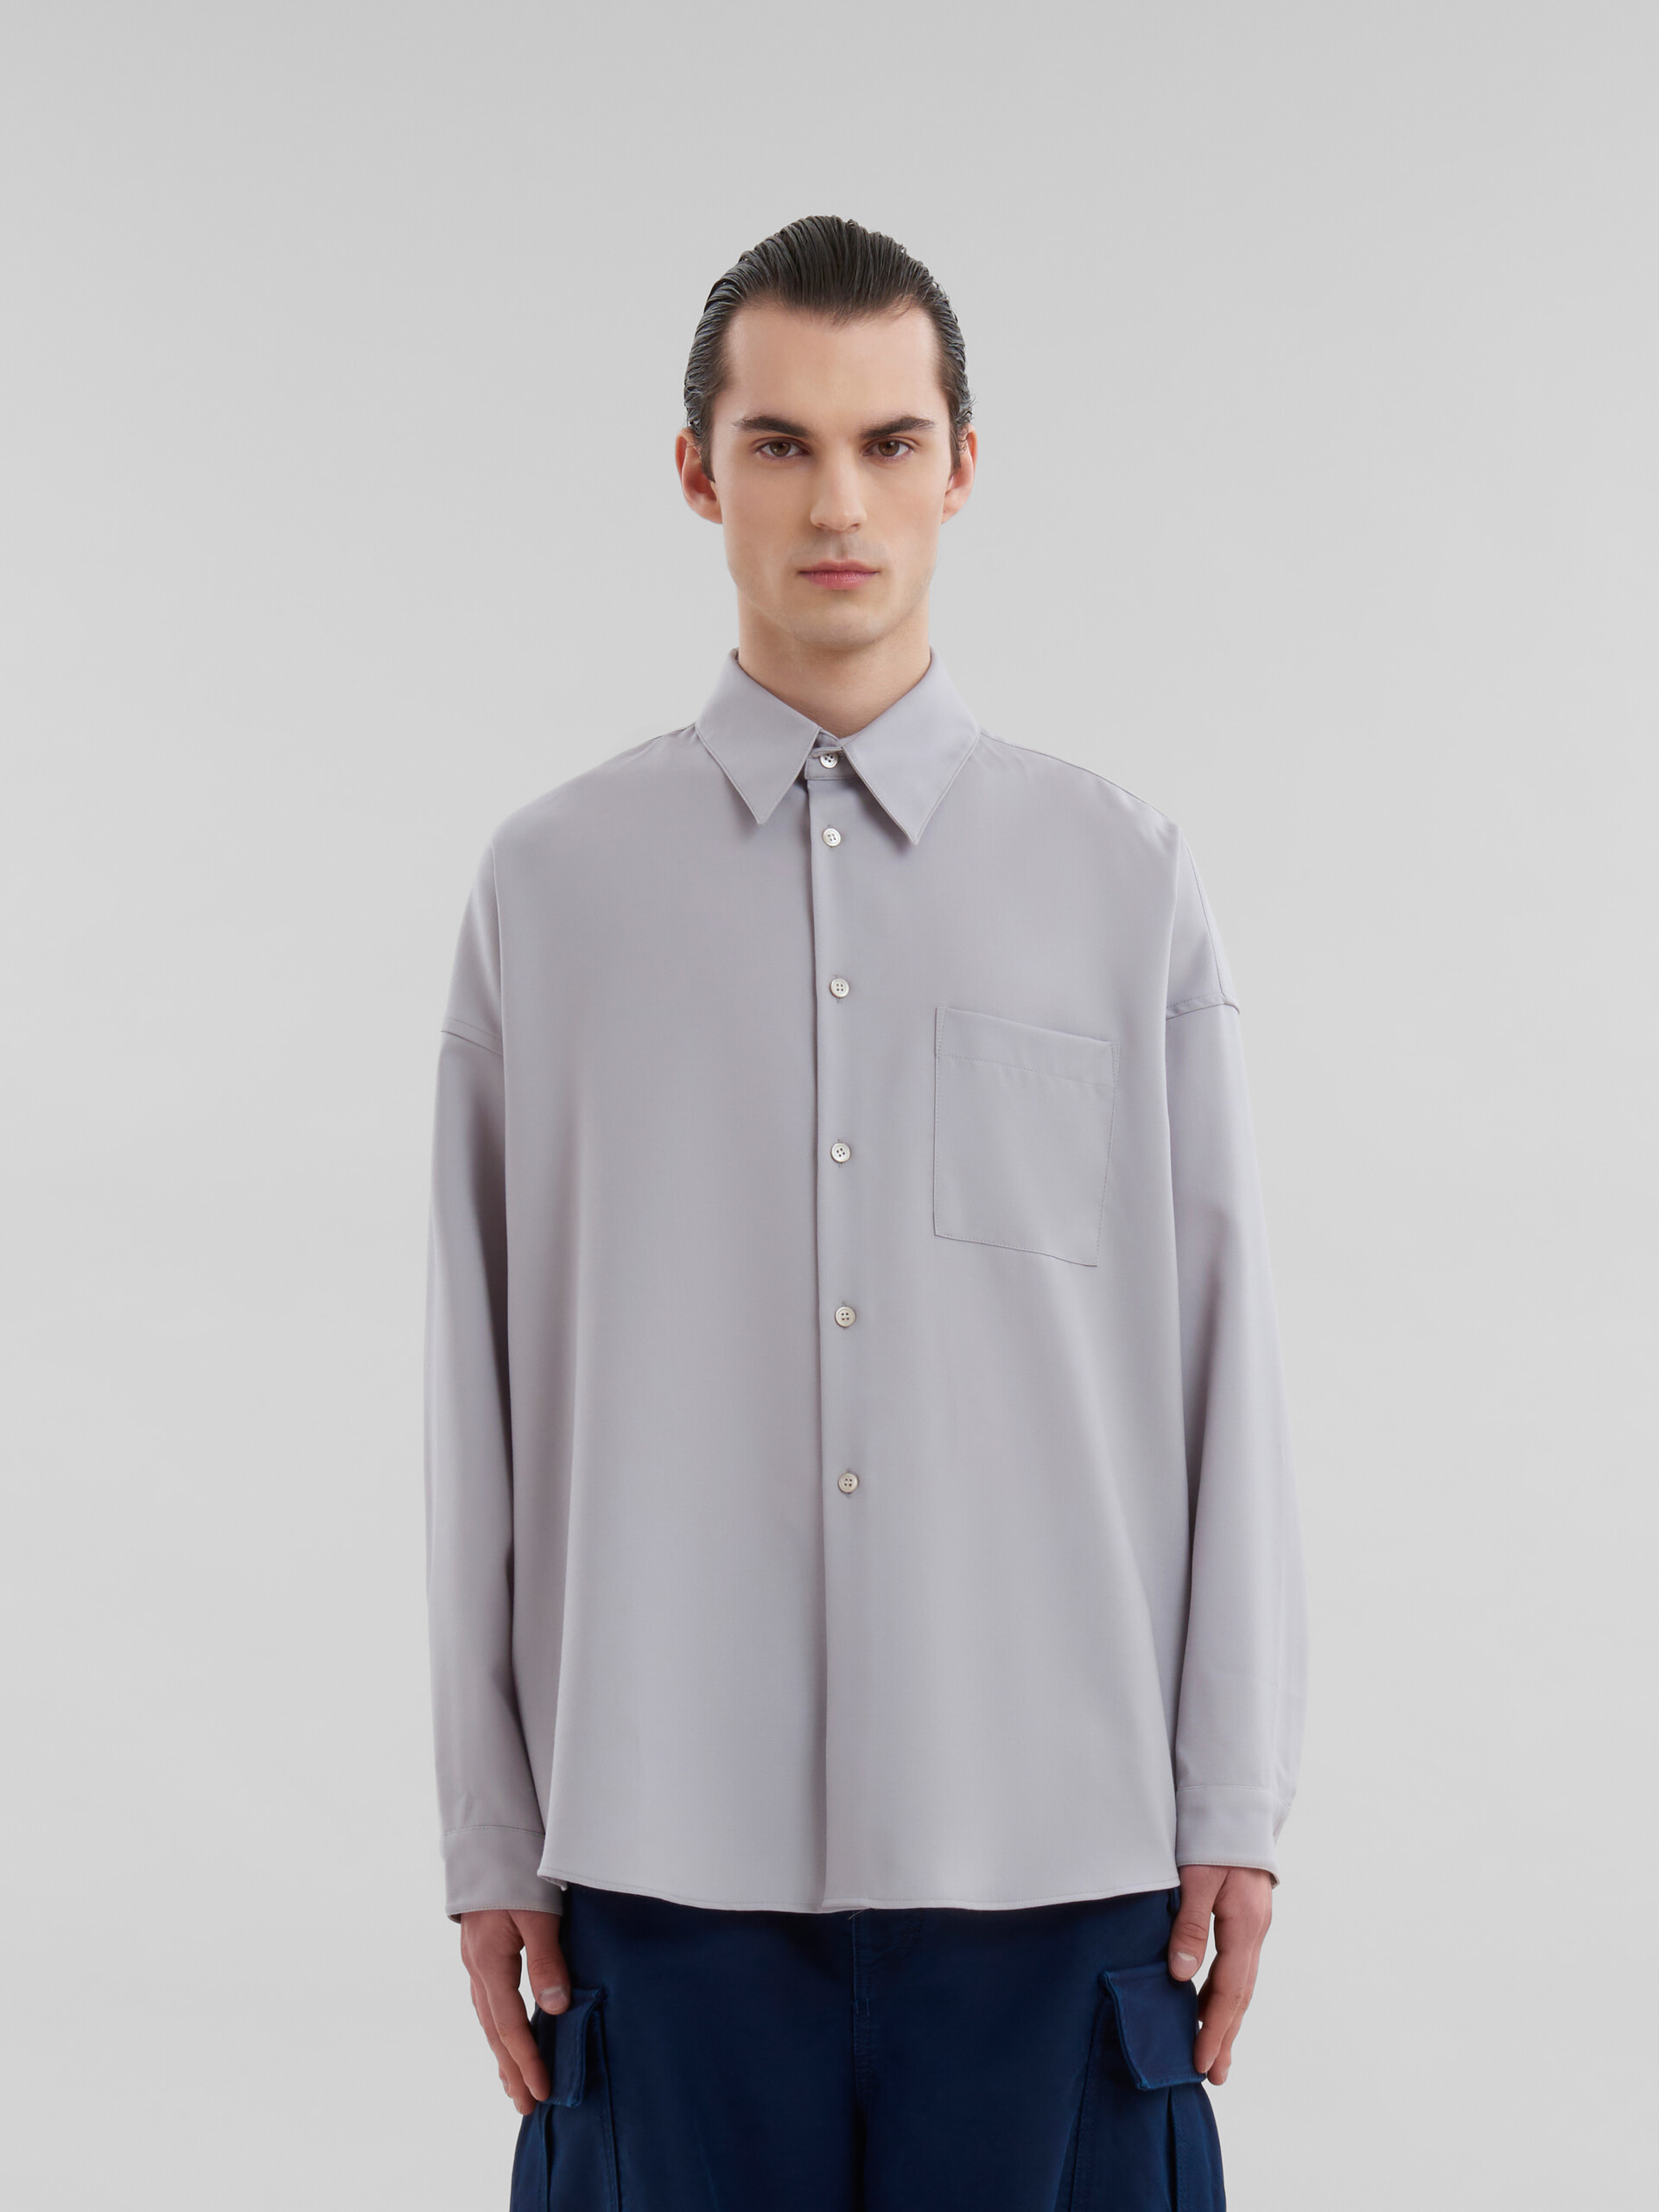 Dunkelblaues langärmeliges Hemd aus Tropenwolle - Hemden - Image 2